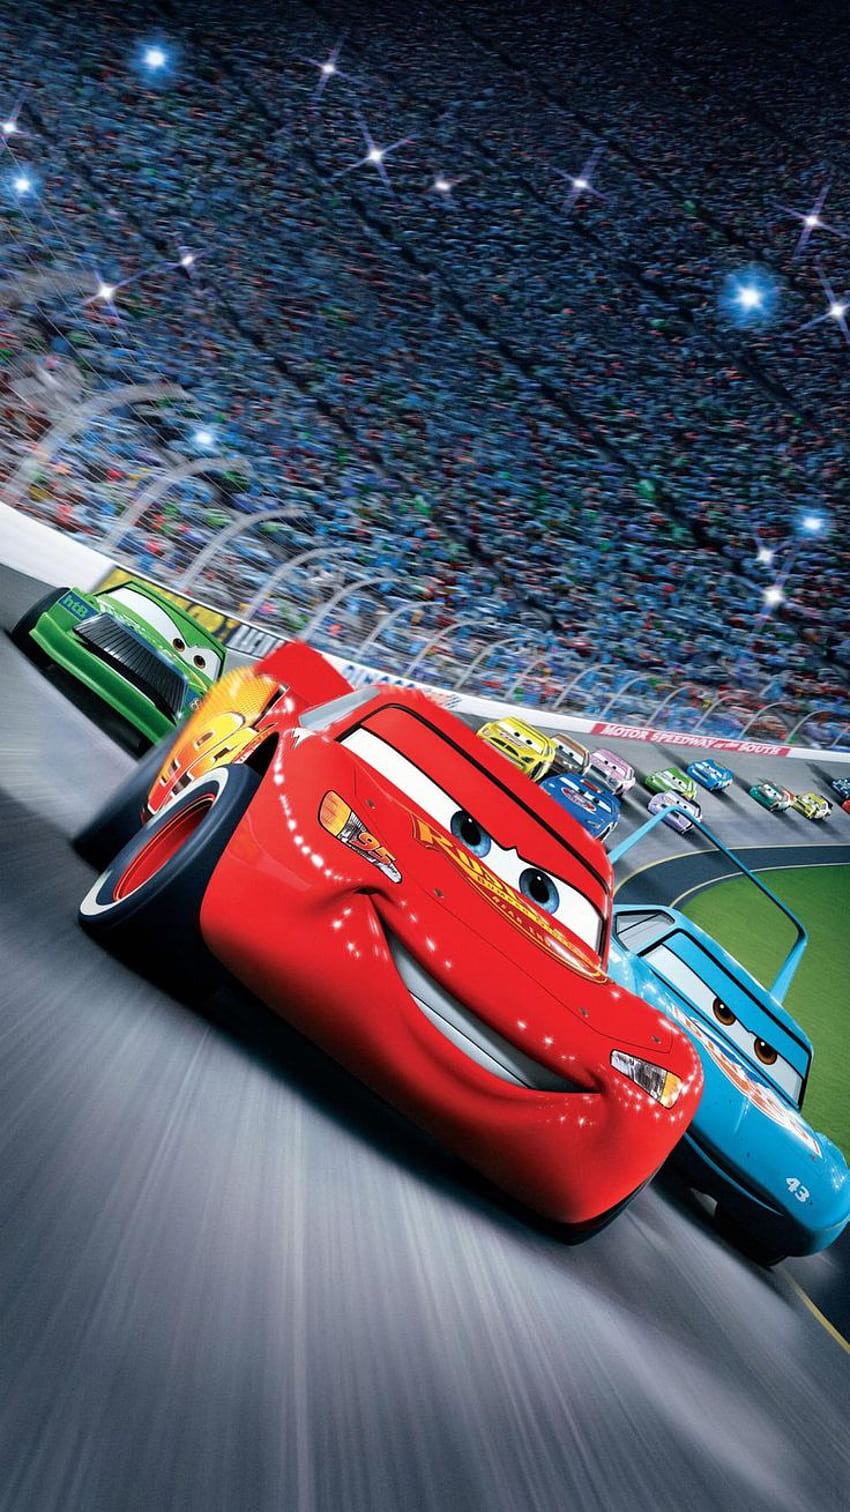 Coches (2006) Teléfono. Cinemanía. Película de coches de Disney, Coches de Disney, Película de coches, Disney Cars 1 fondo de pantalla del teléfono